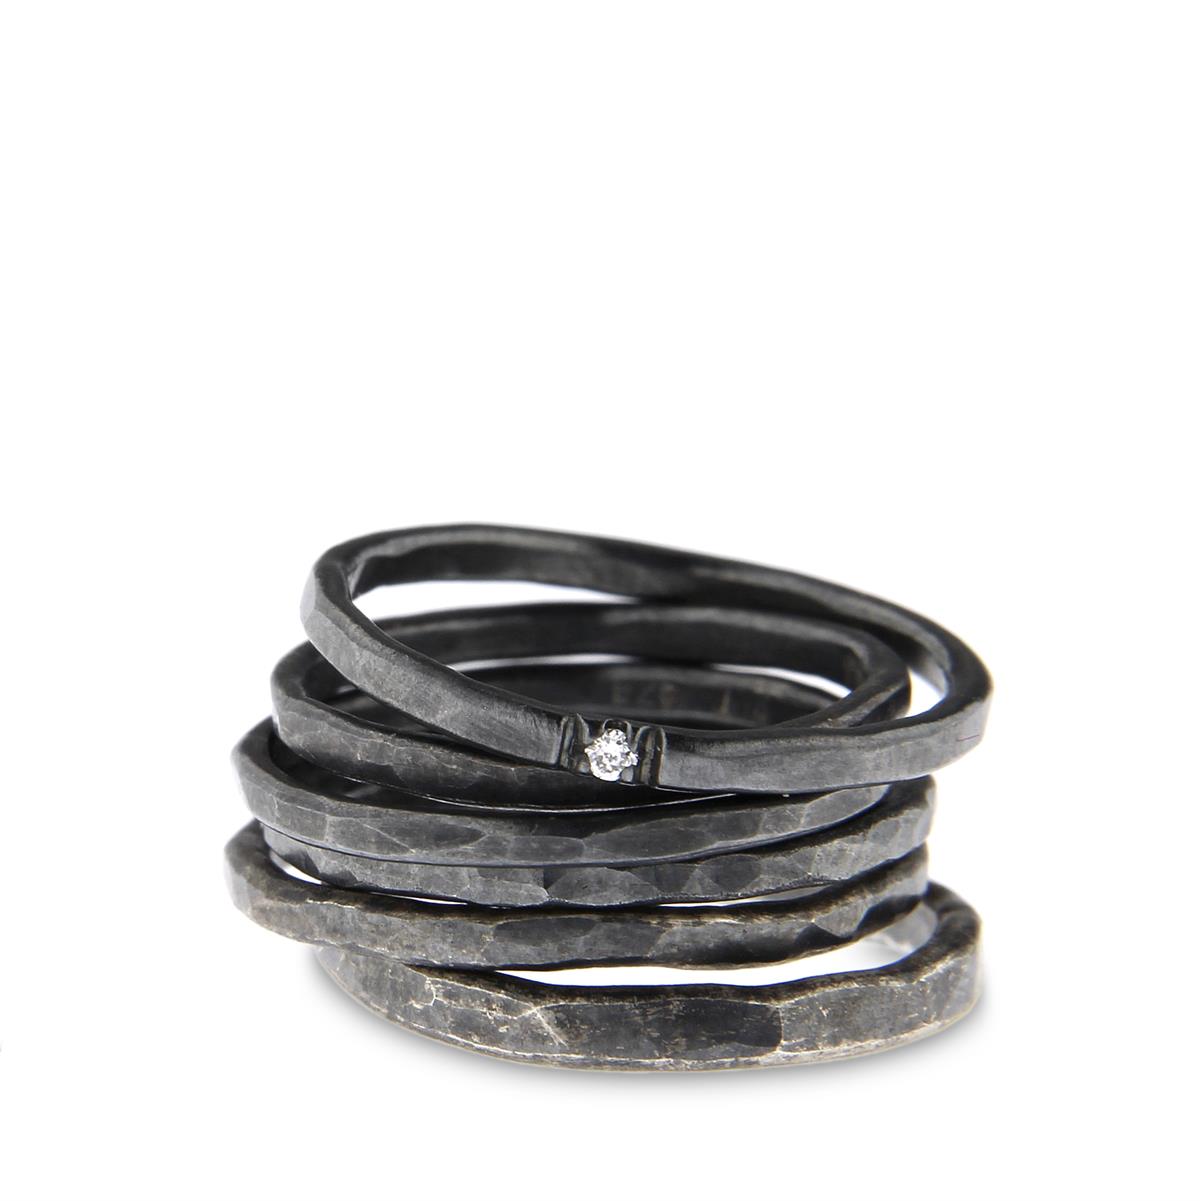 Katie g. Jewellery - Stapel aus Knuckle Ringen - sterling silber schwarz oxidiert mit 1 Brillant in einem Ring - Ringe um 40e und Brillant um 70€